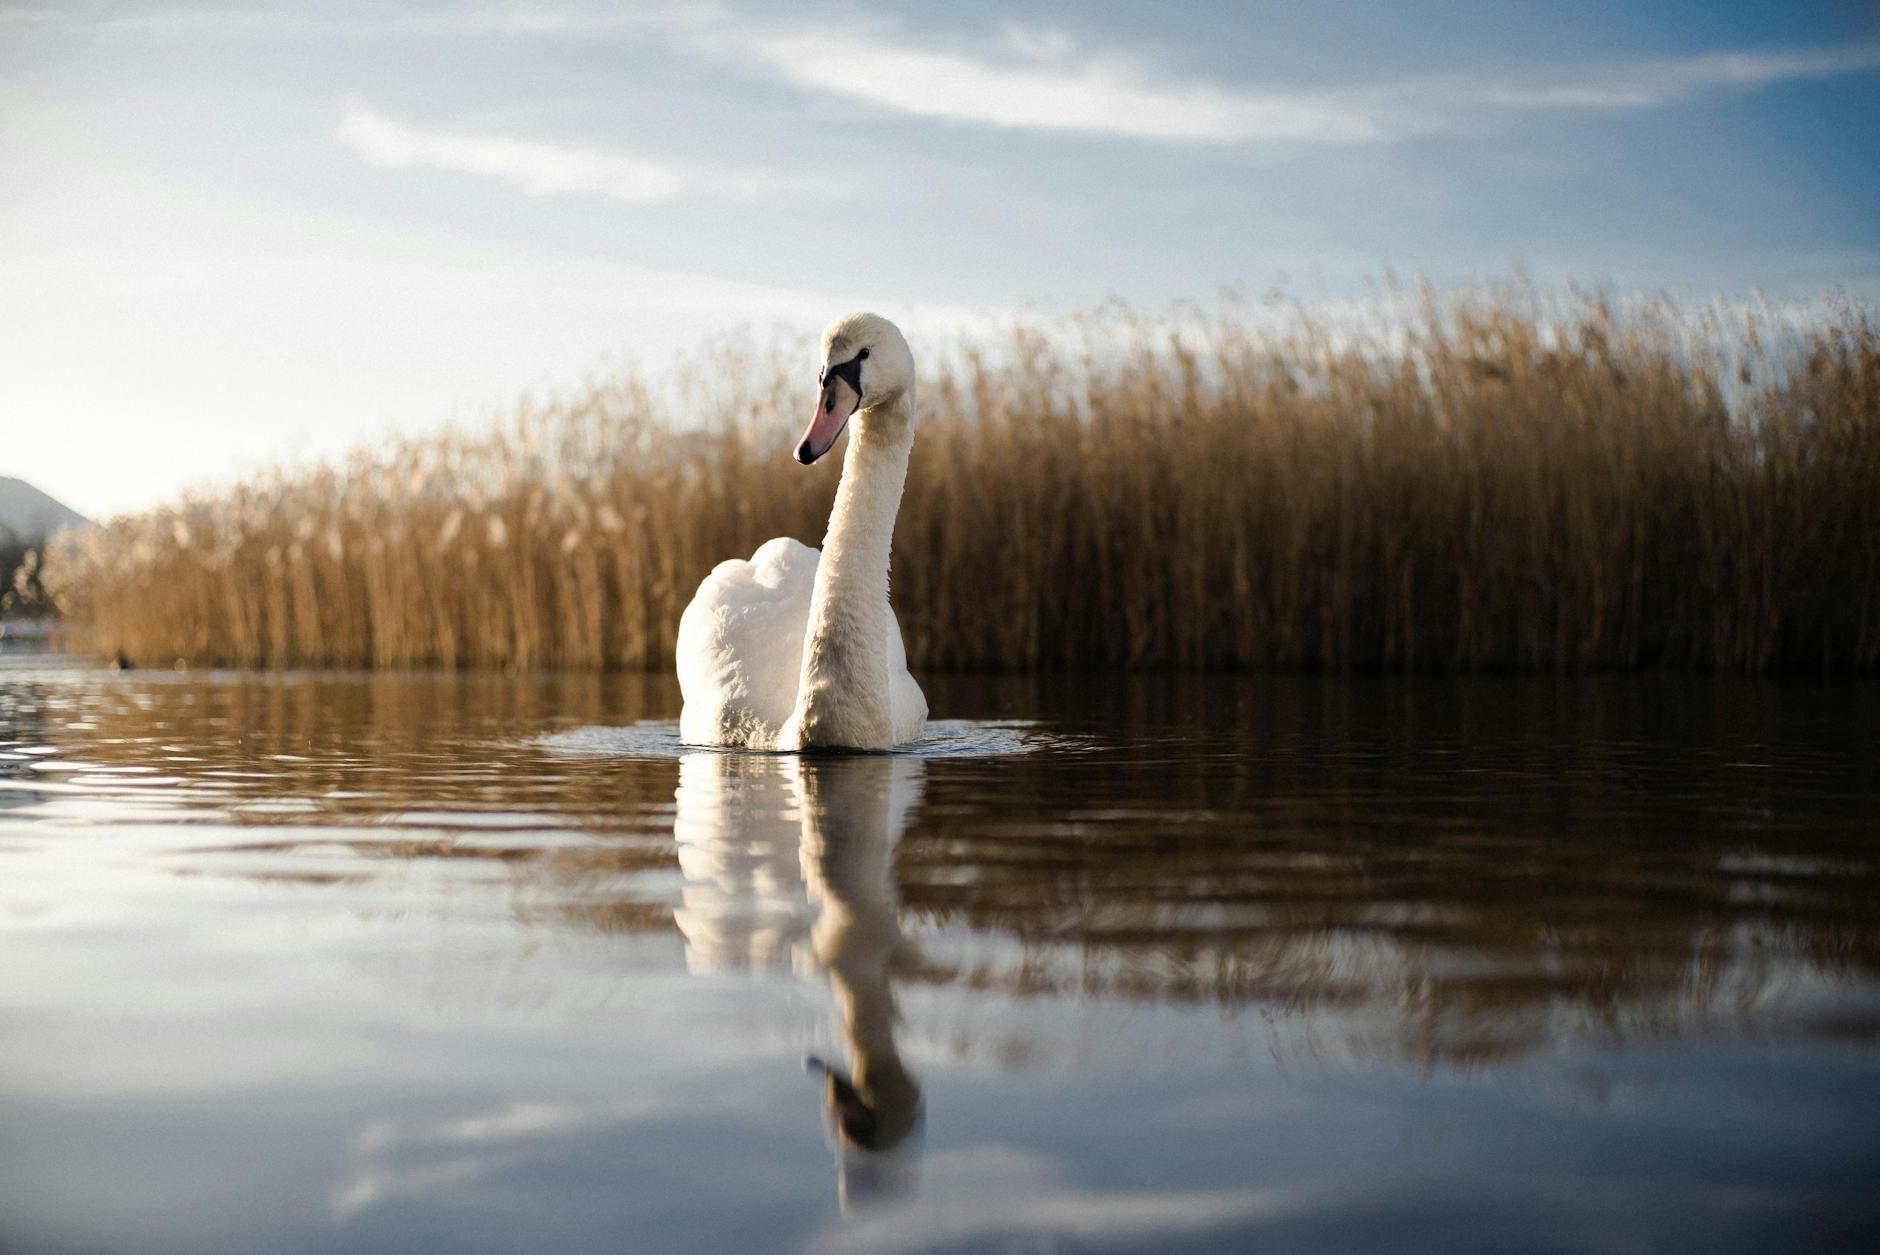 Swan in River Near Grass